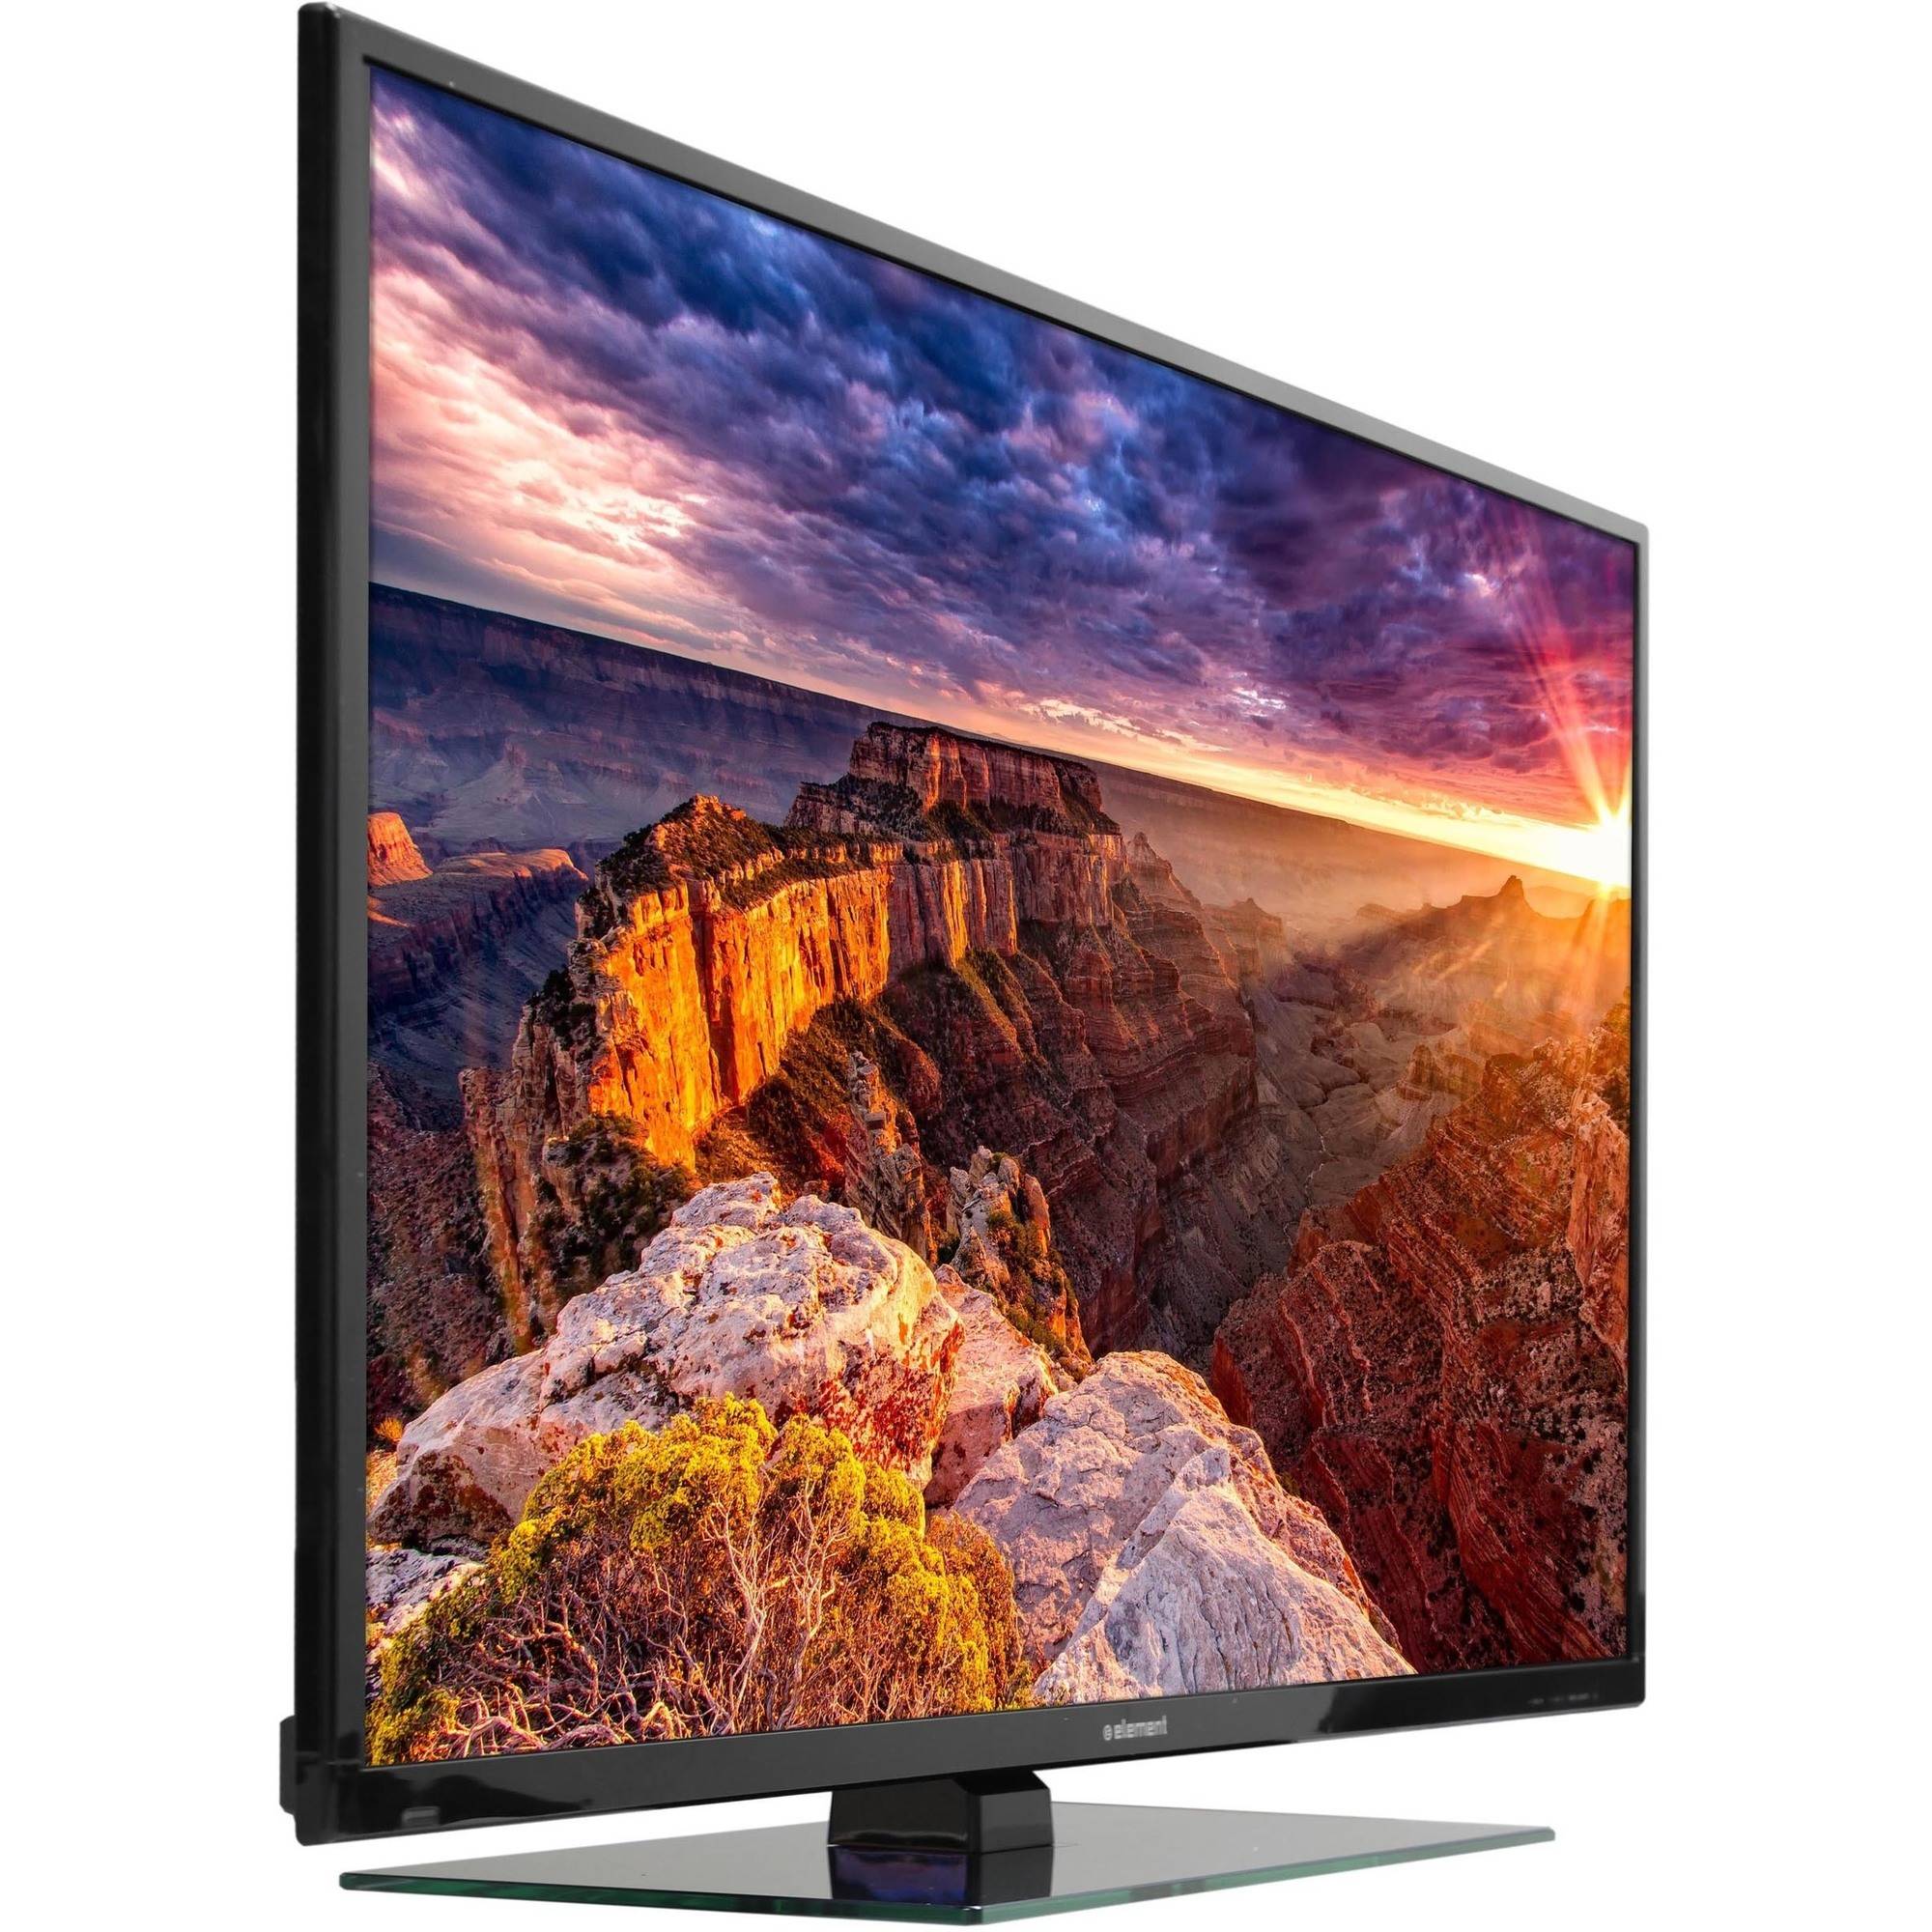 Refurbished 50″ HDTV for $250